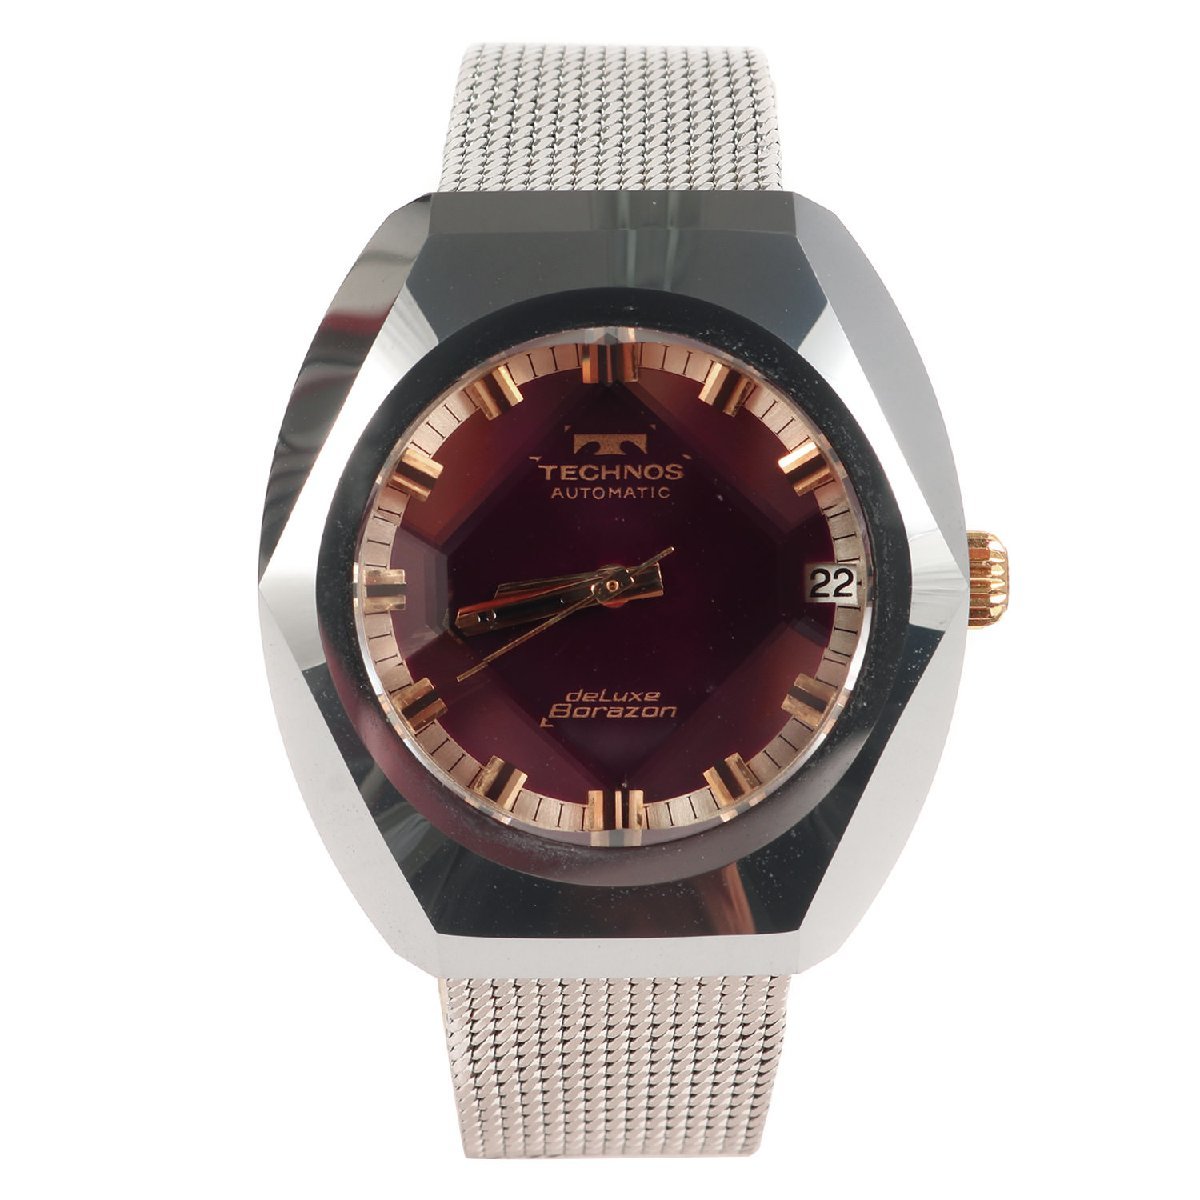 本命ギフト Deluxe 腕時計 テクノス TECHNOS Borazon ブランド 金属